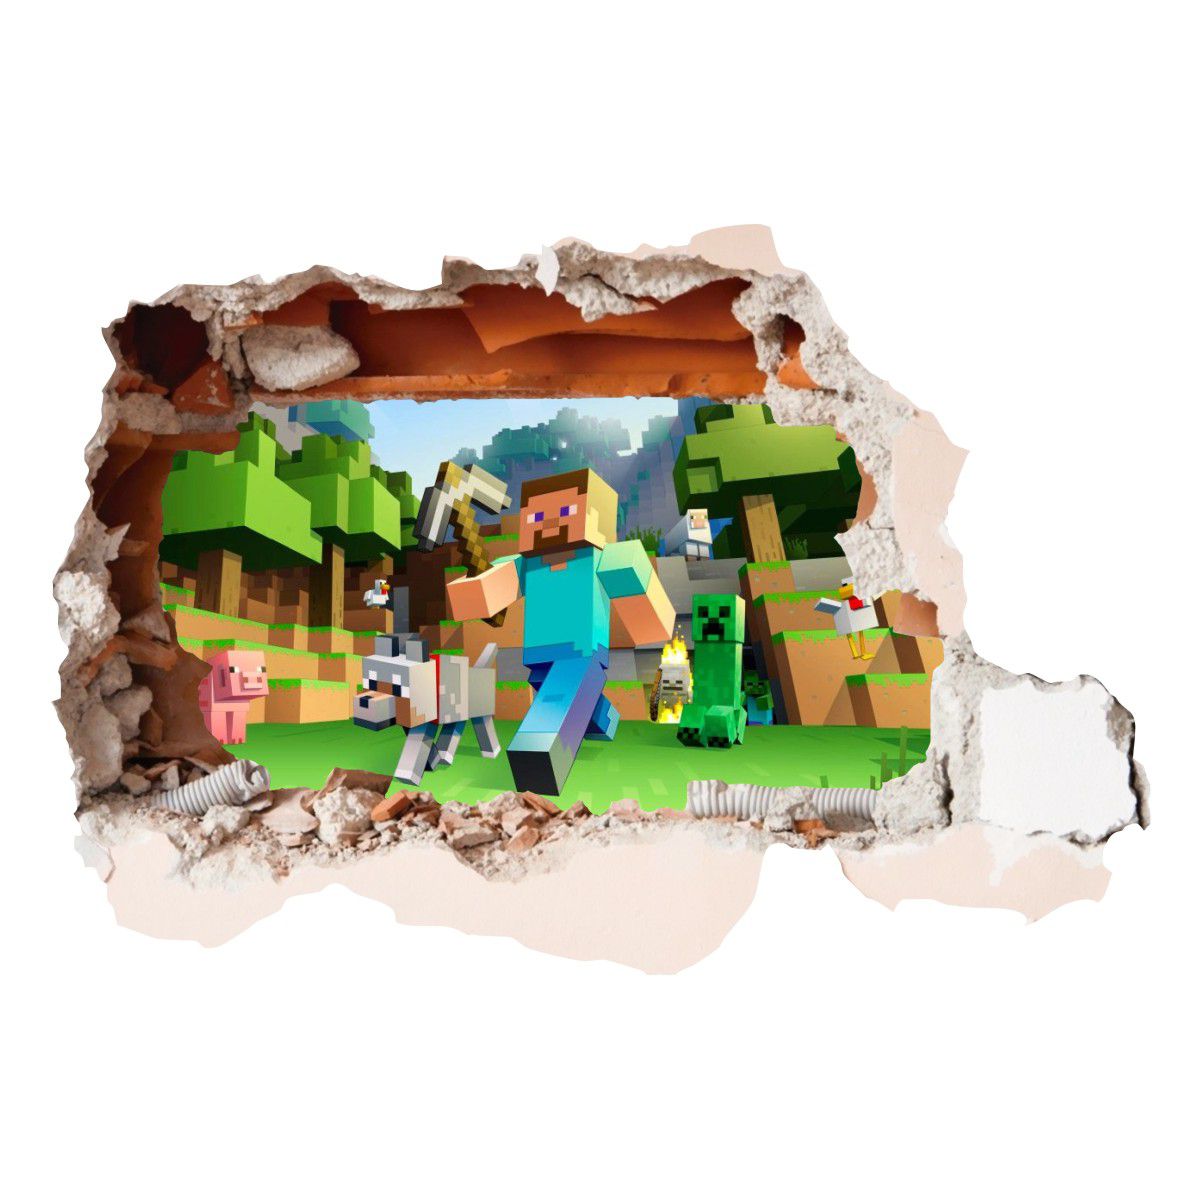 Adesivo Minecraft - Boneco - Adesivos de Box, Parede, Decoração em